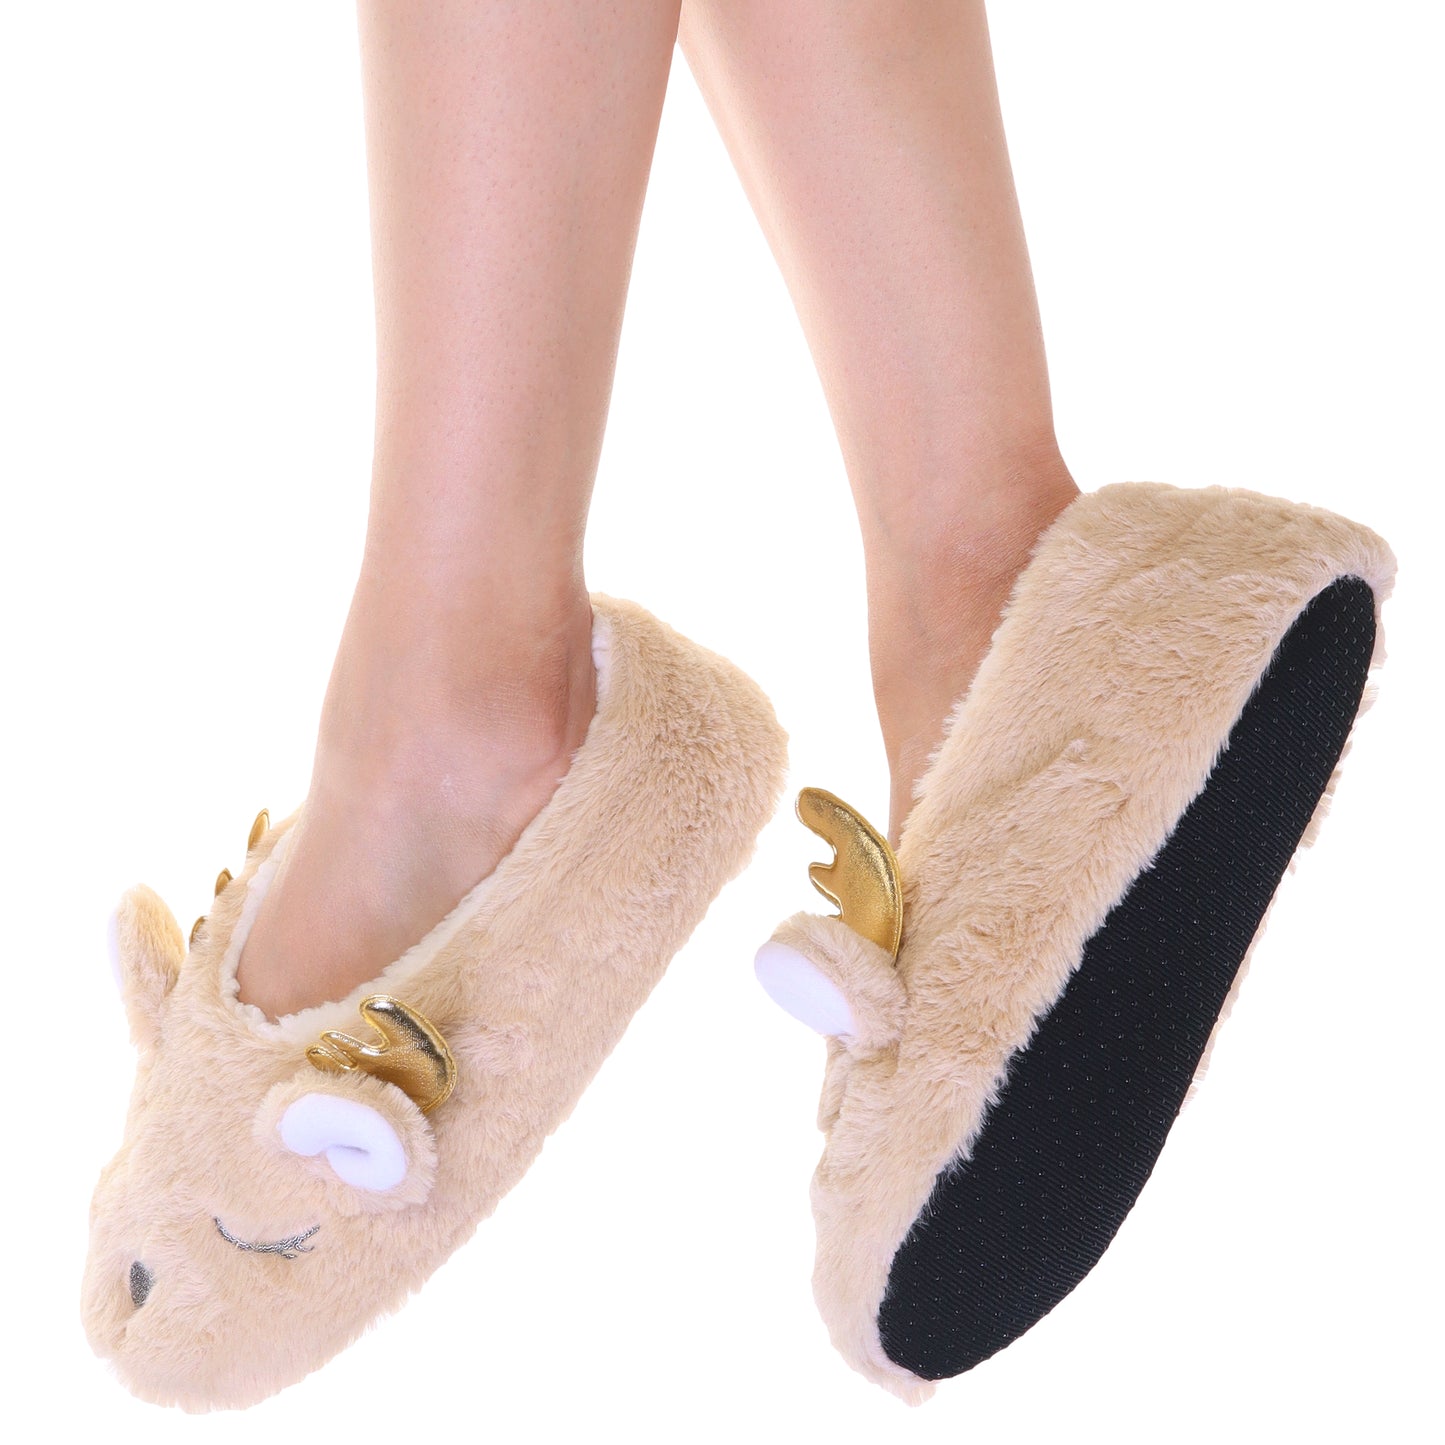 Winter-Weight Indoor Slipper Socks with Deer Design (3-Pairs)